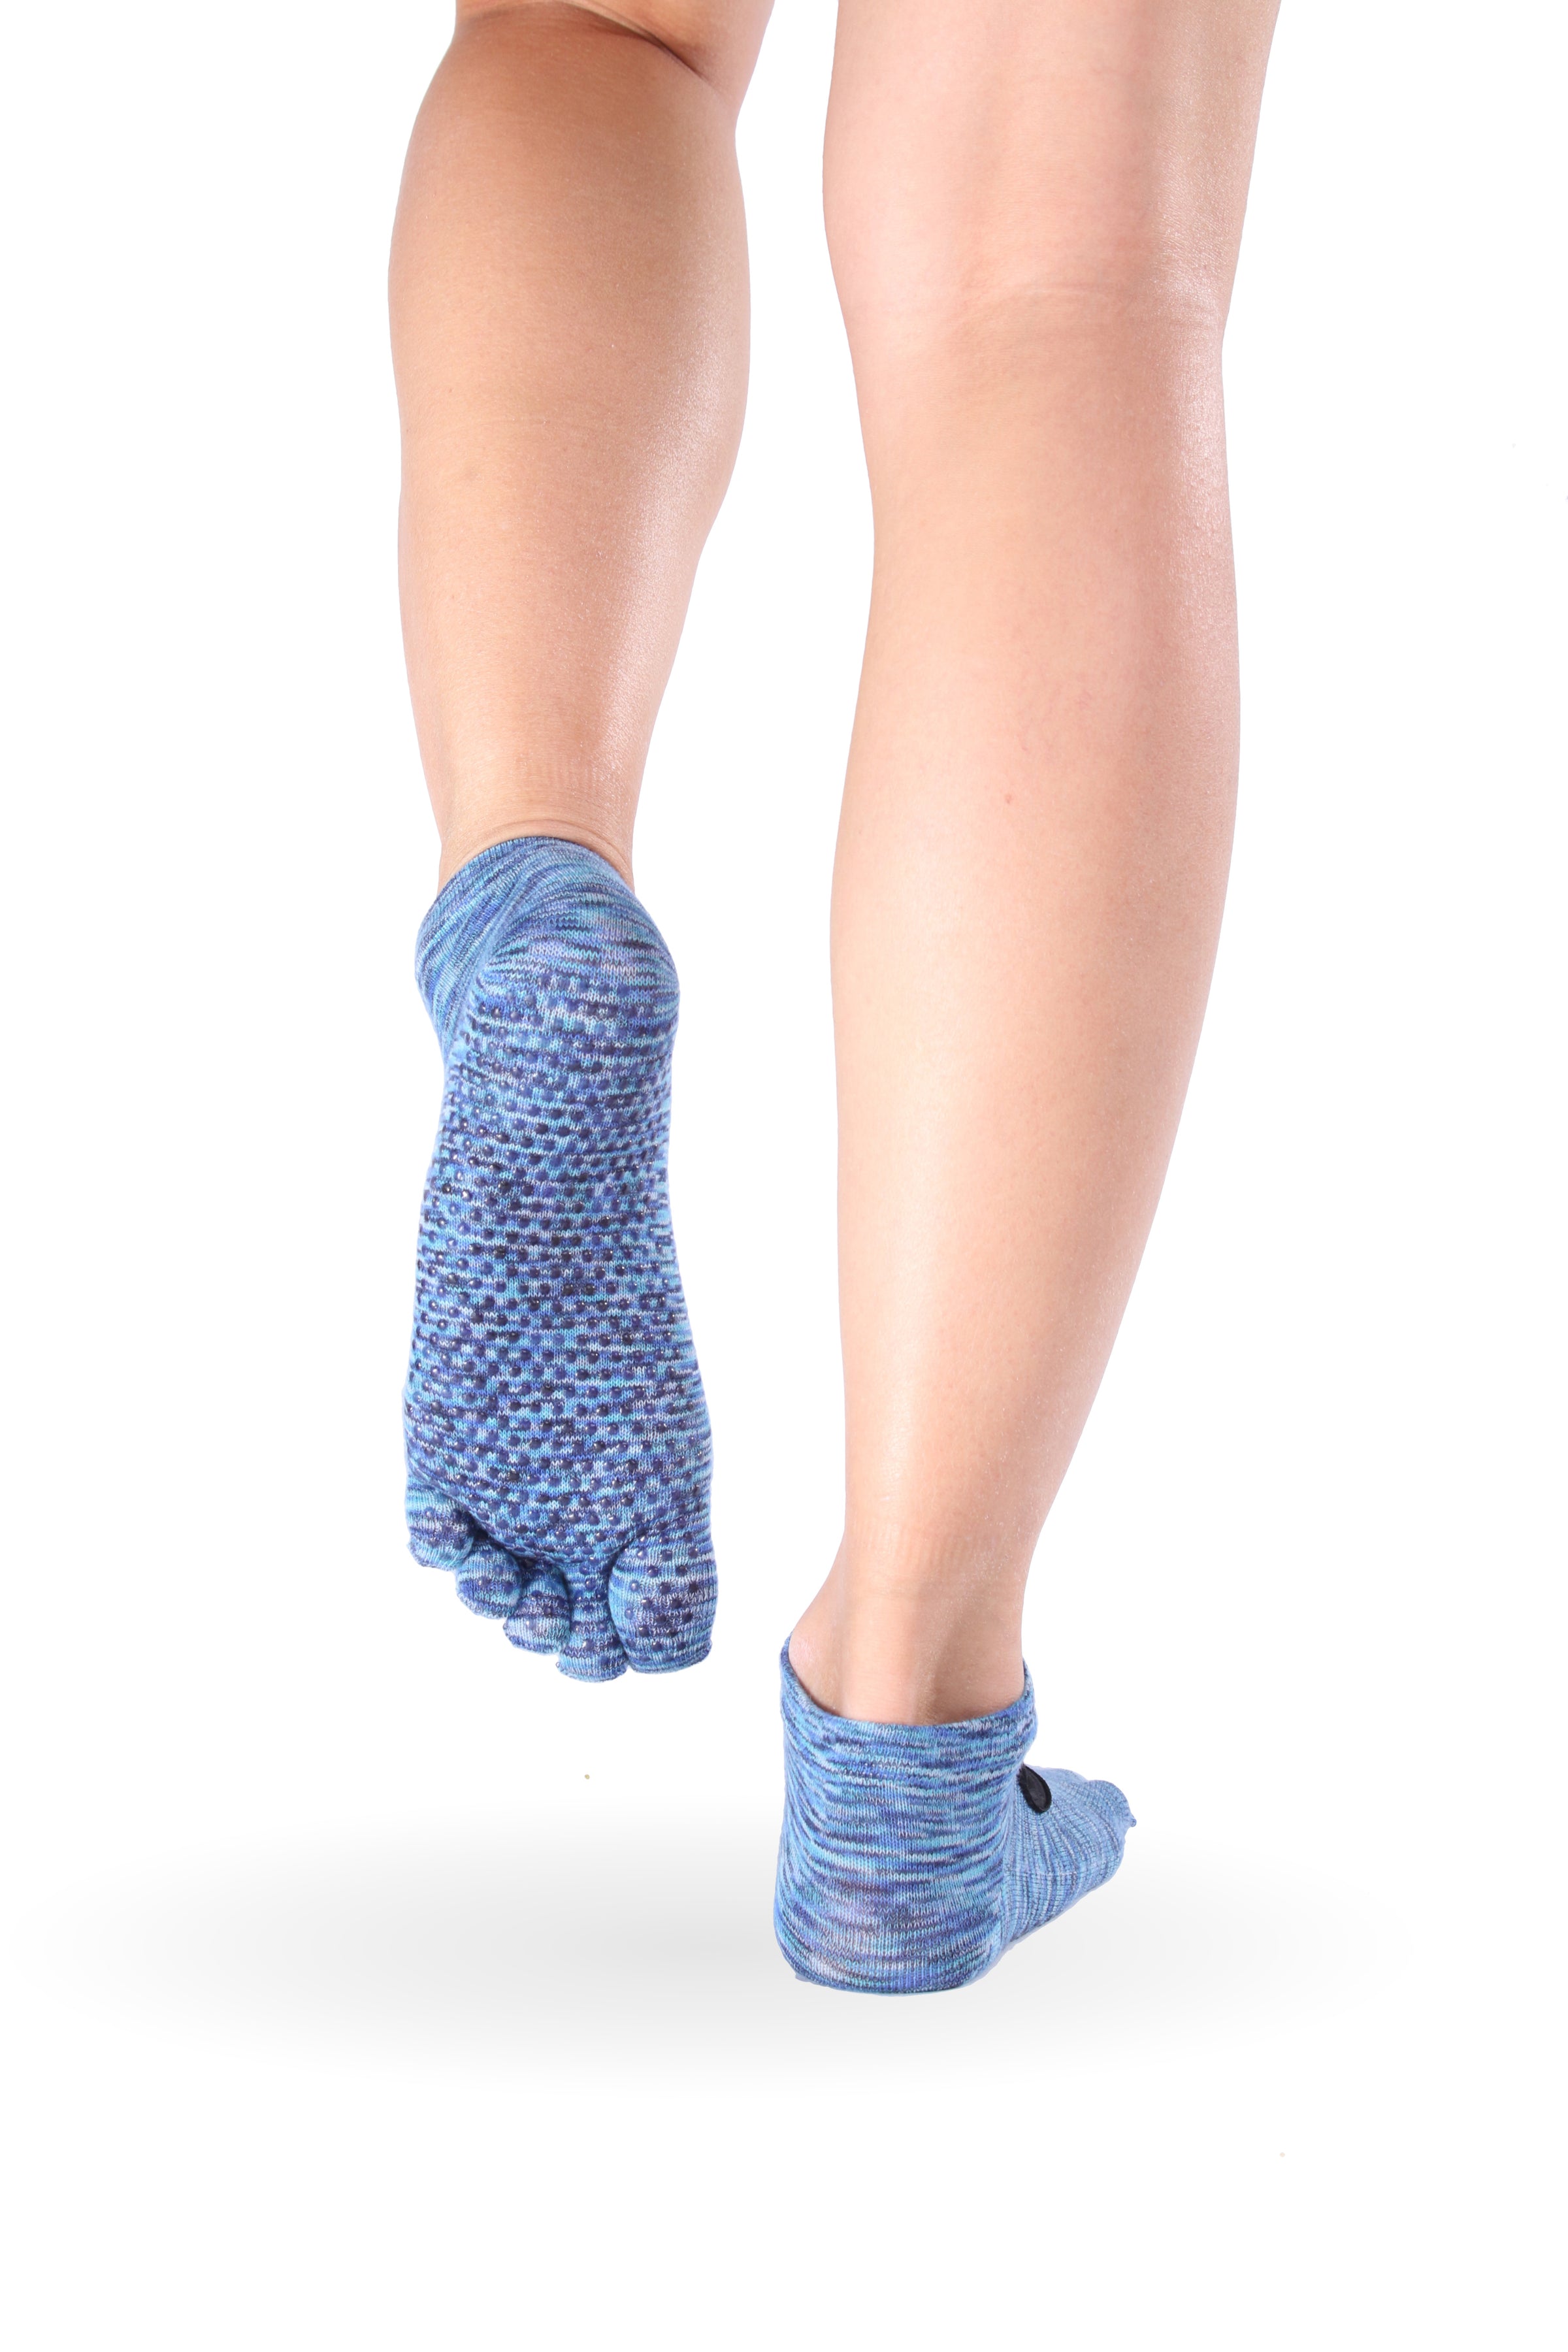 Full Toe Low Rise Tec Grip Socks – ToeSox, Tavi